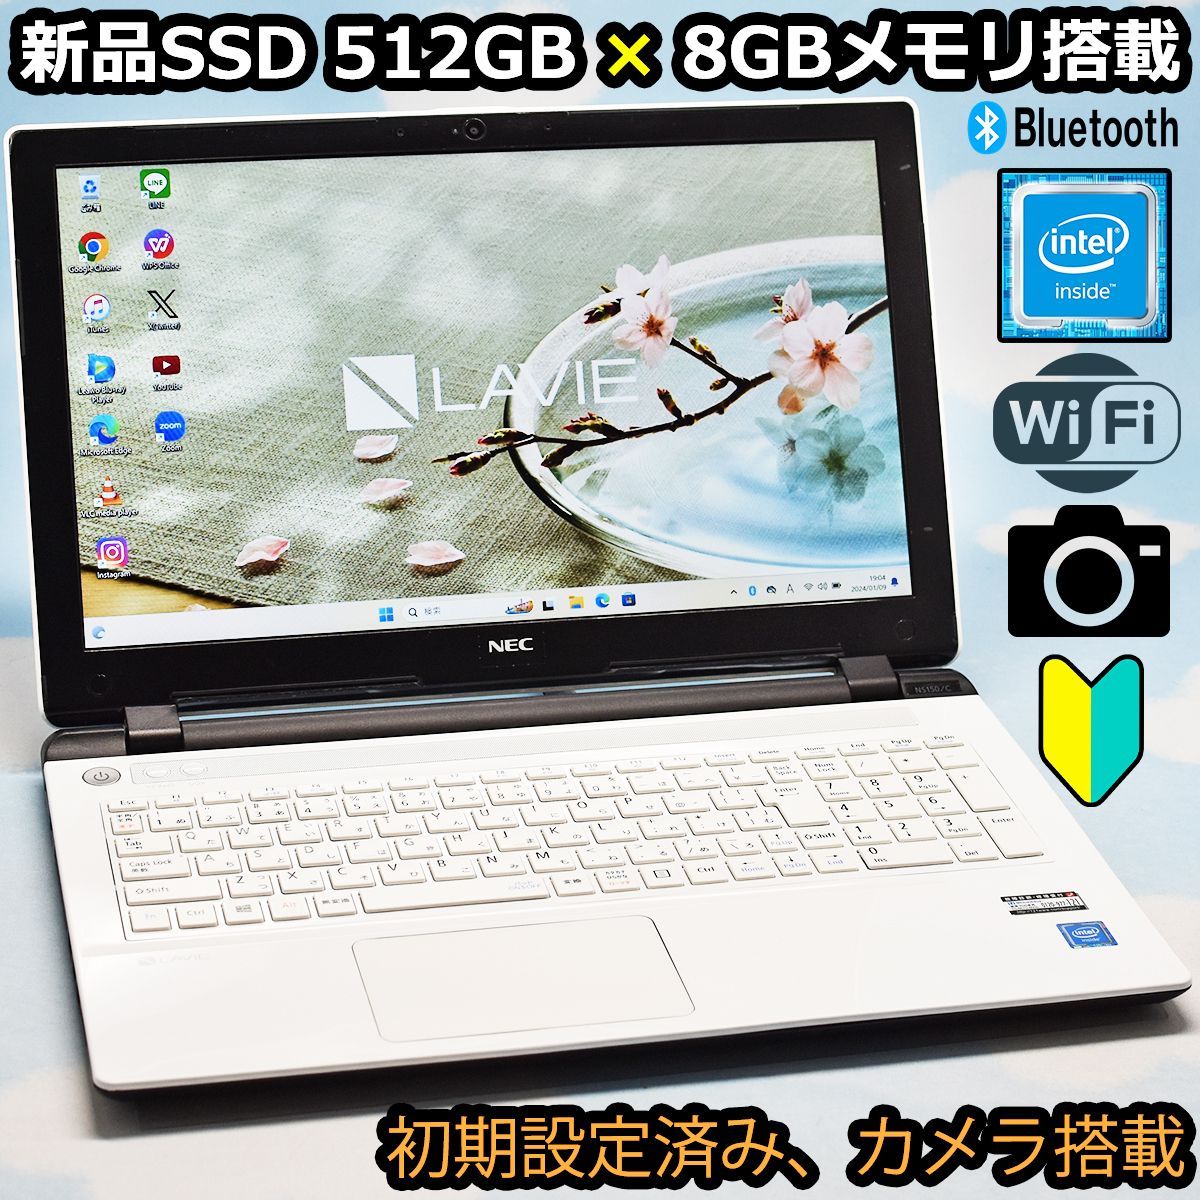 NEC 新品SSD 大容量 512GB、8GBメモリ、Bluetooth、カメラ、マイク